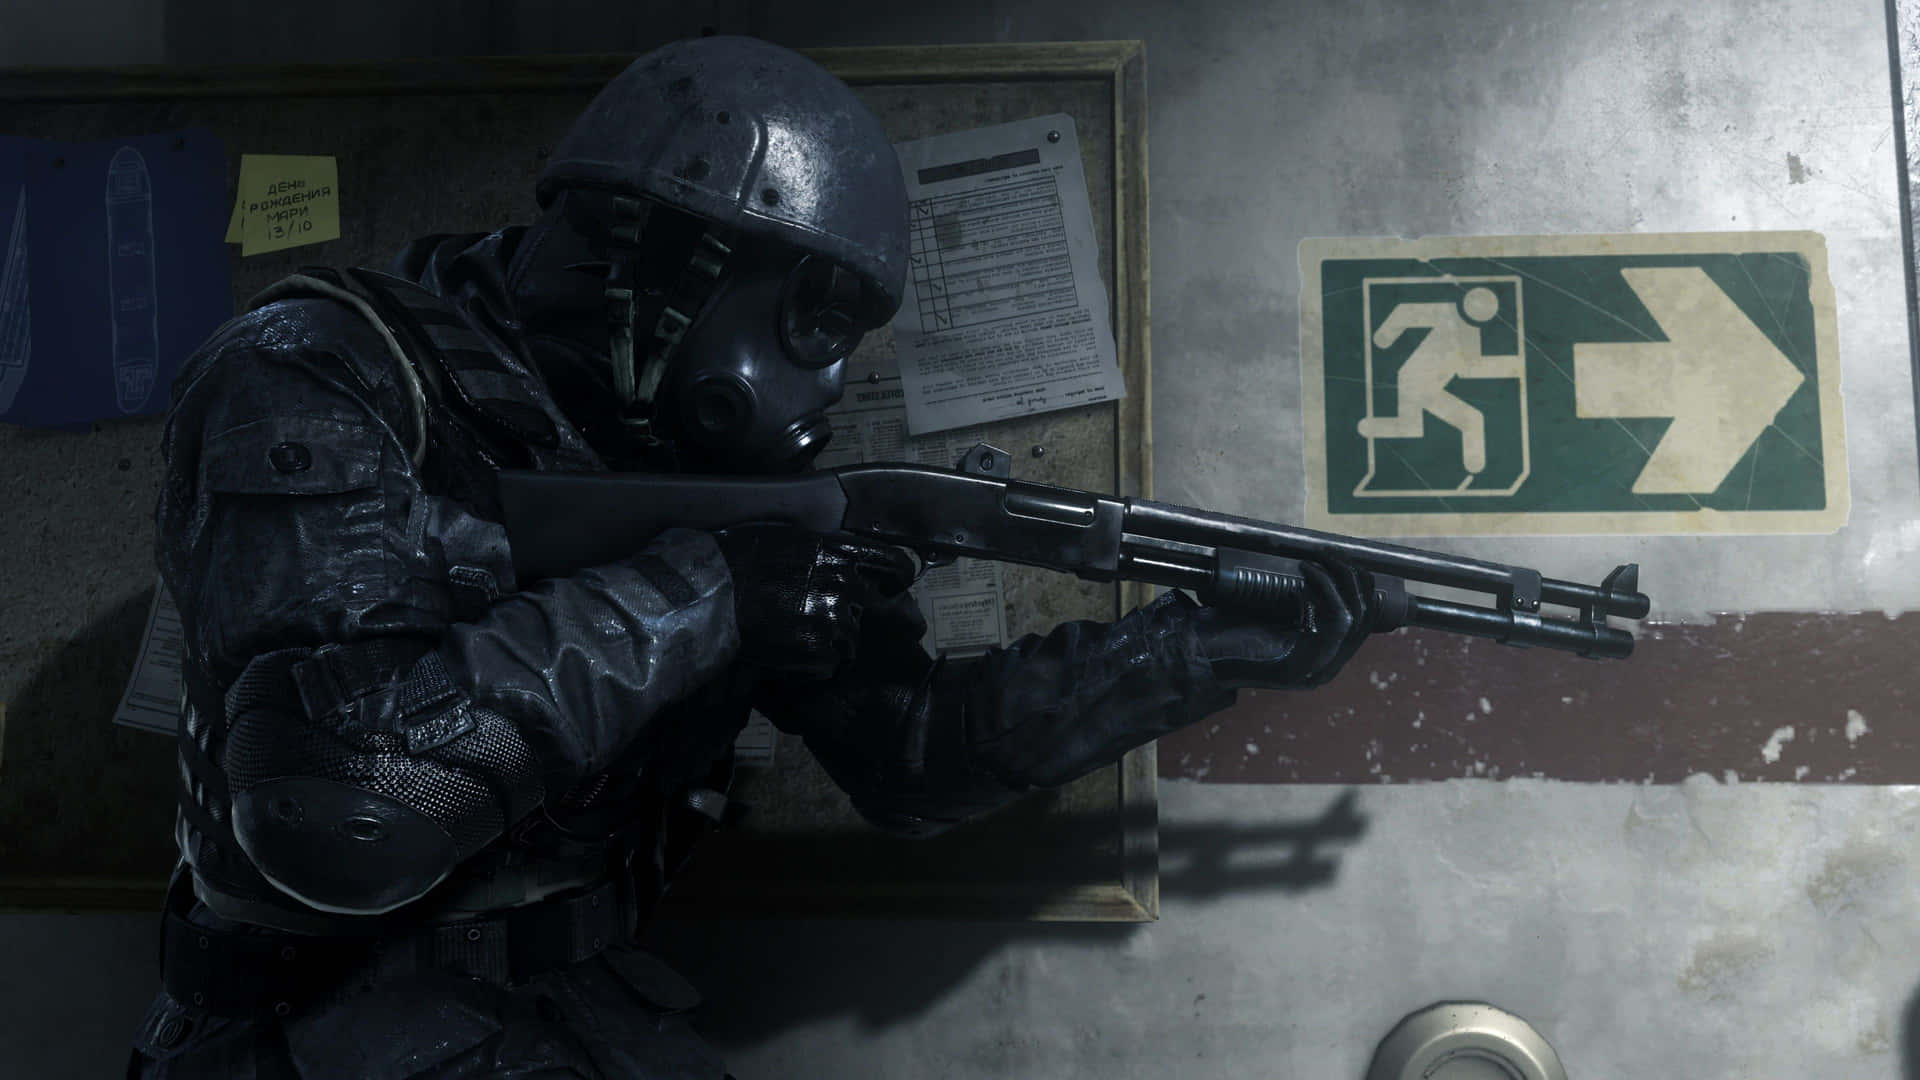 4kcall Of Duty Modern Warfare Bakgrundssoldat Med Hagelgevär